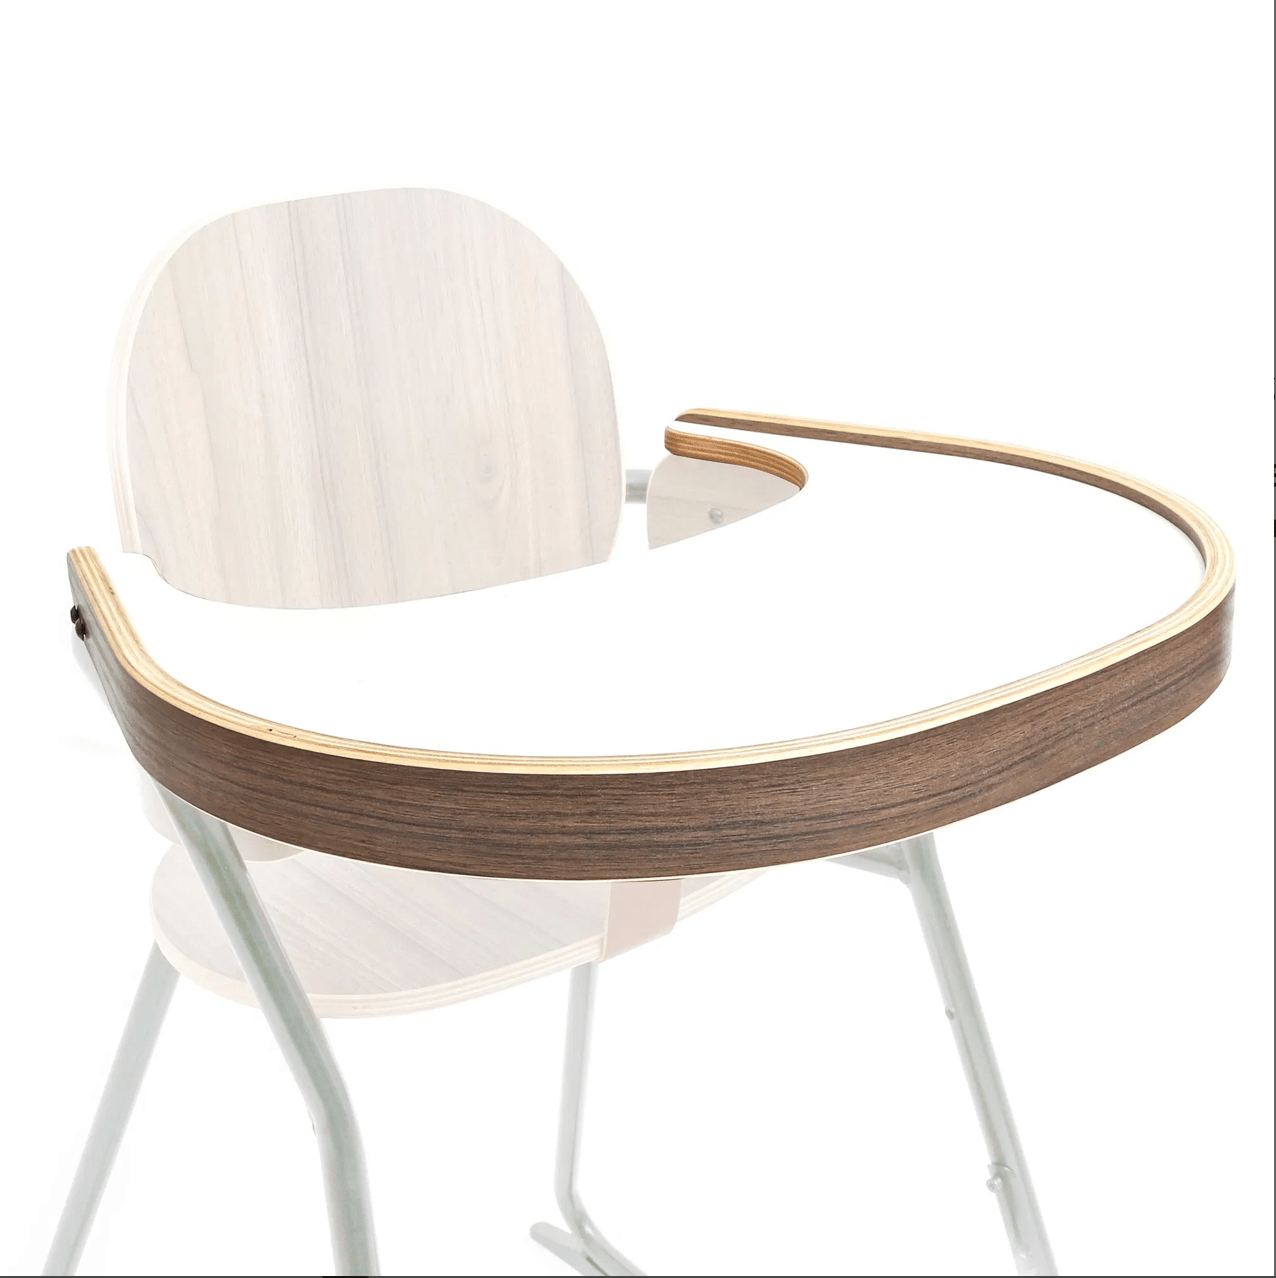 Charlie Crane TIBU Chair Table Tray, en del av kategorien Furniture - At Home Interiør